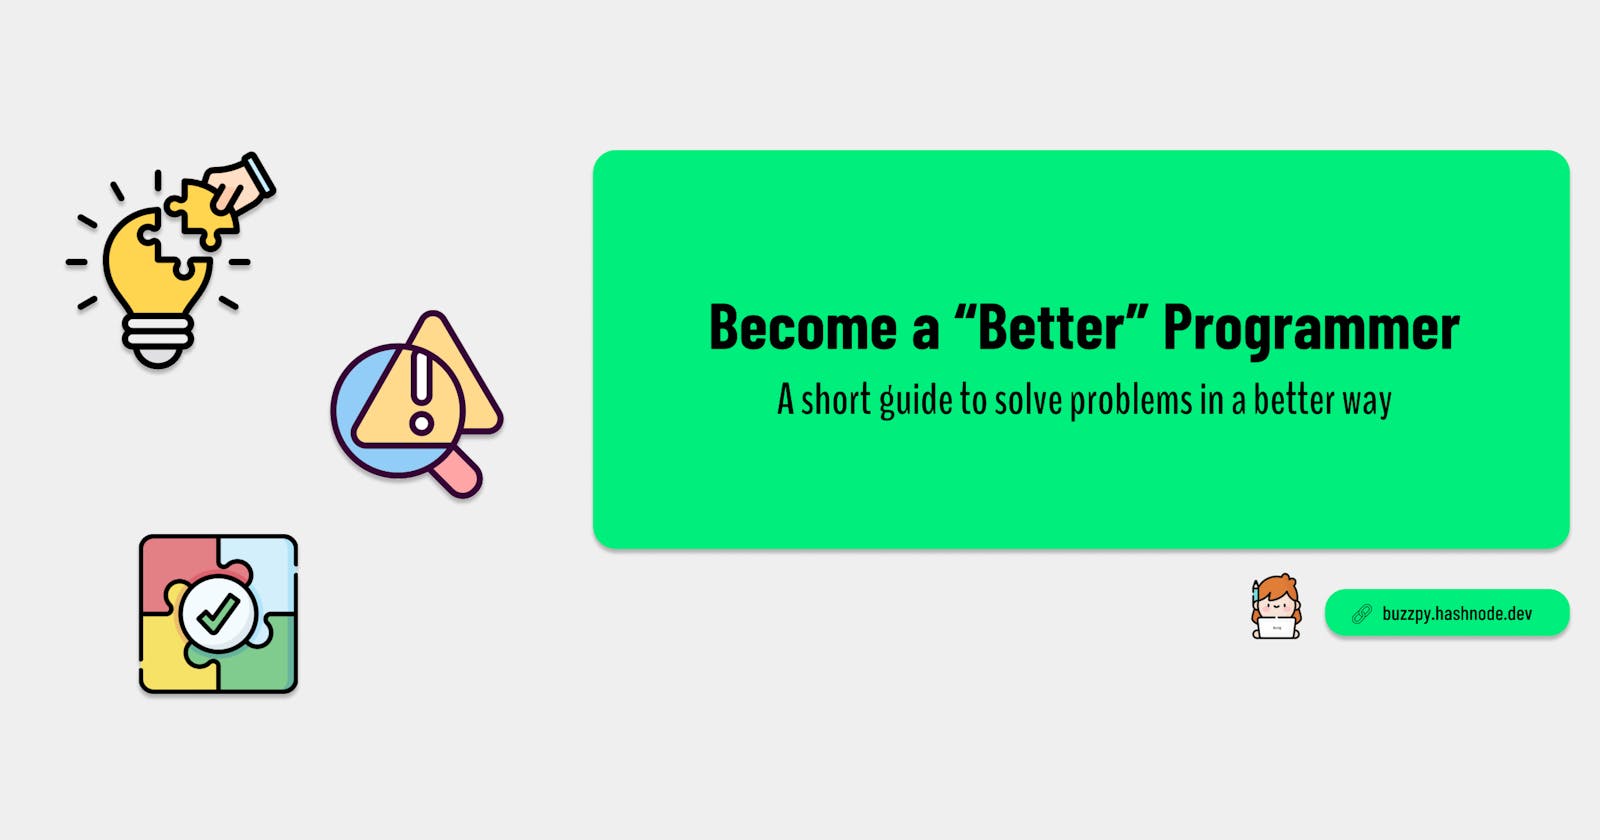 Become a "Better" Programmer